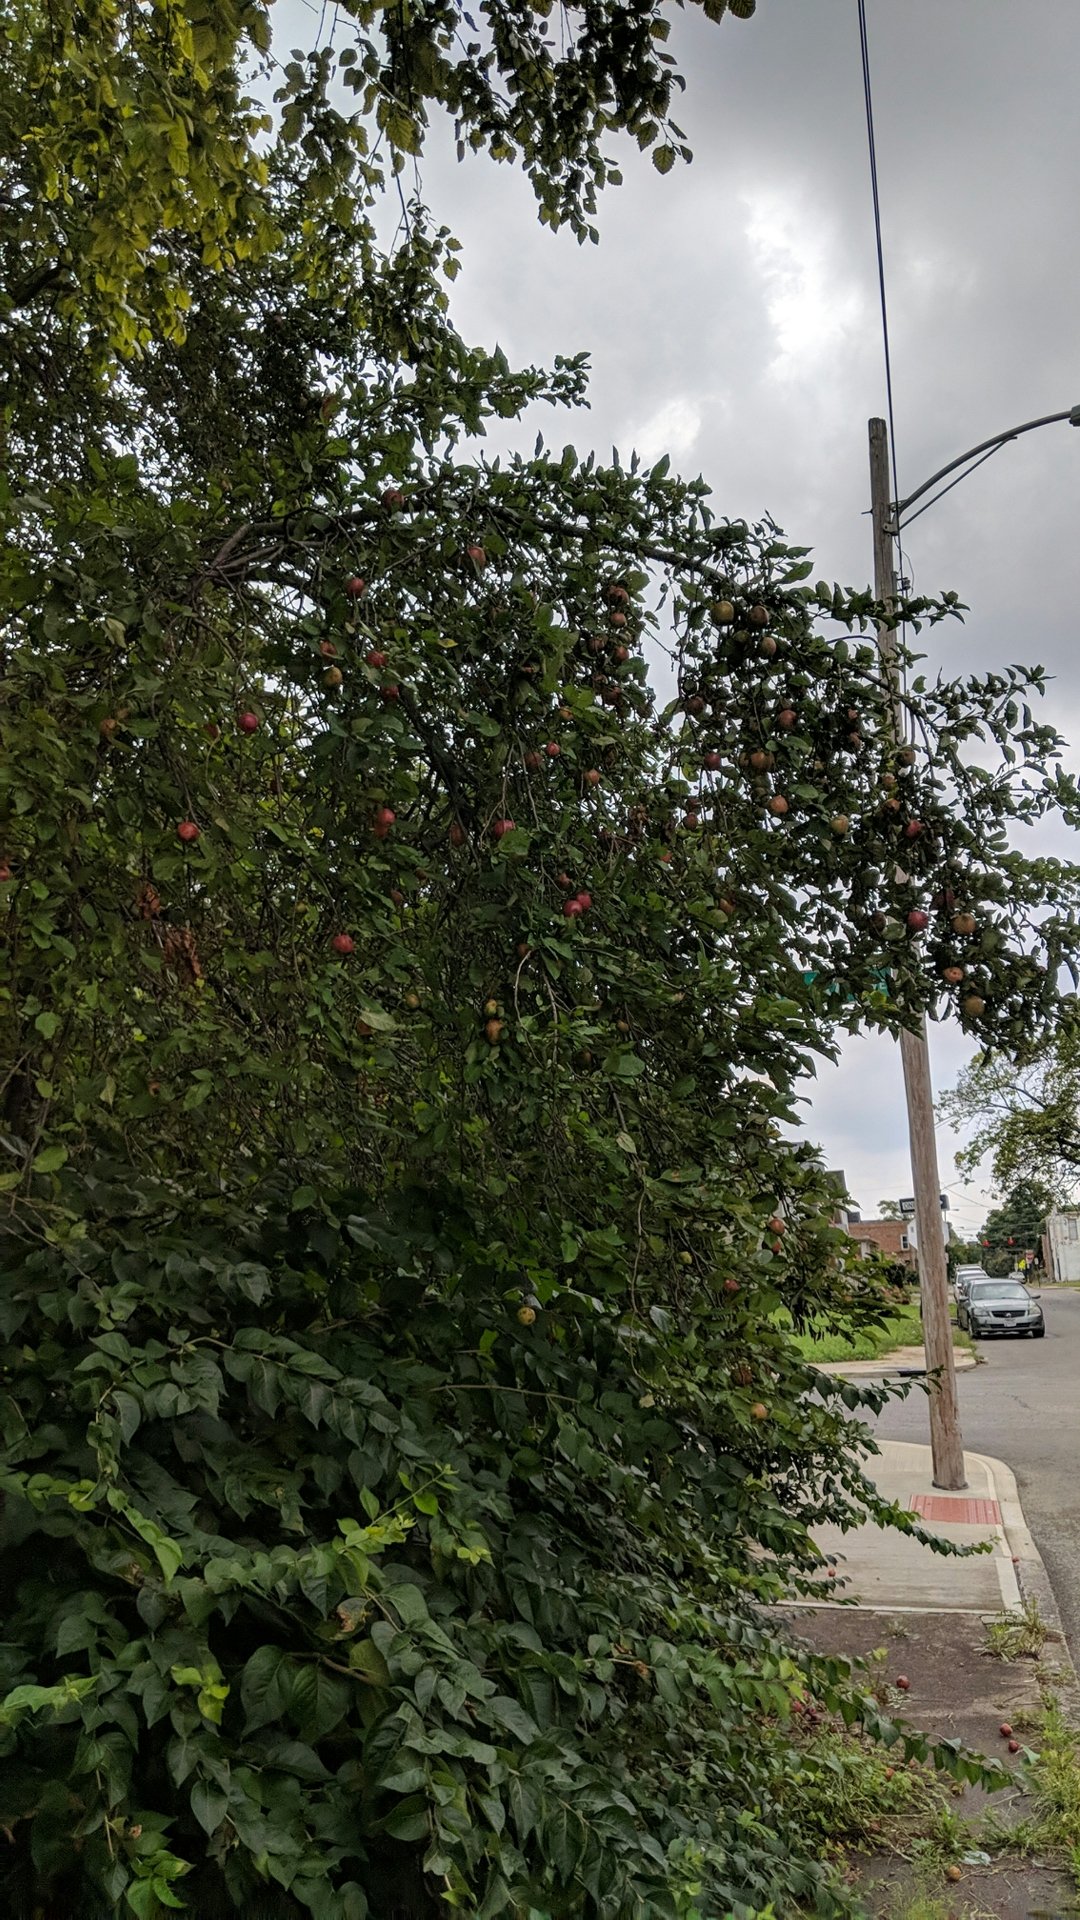 Ripe apples on tree